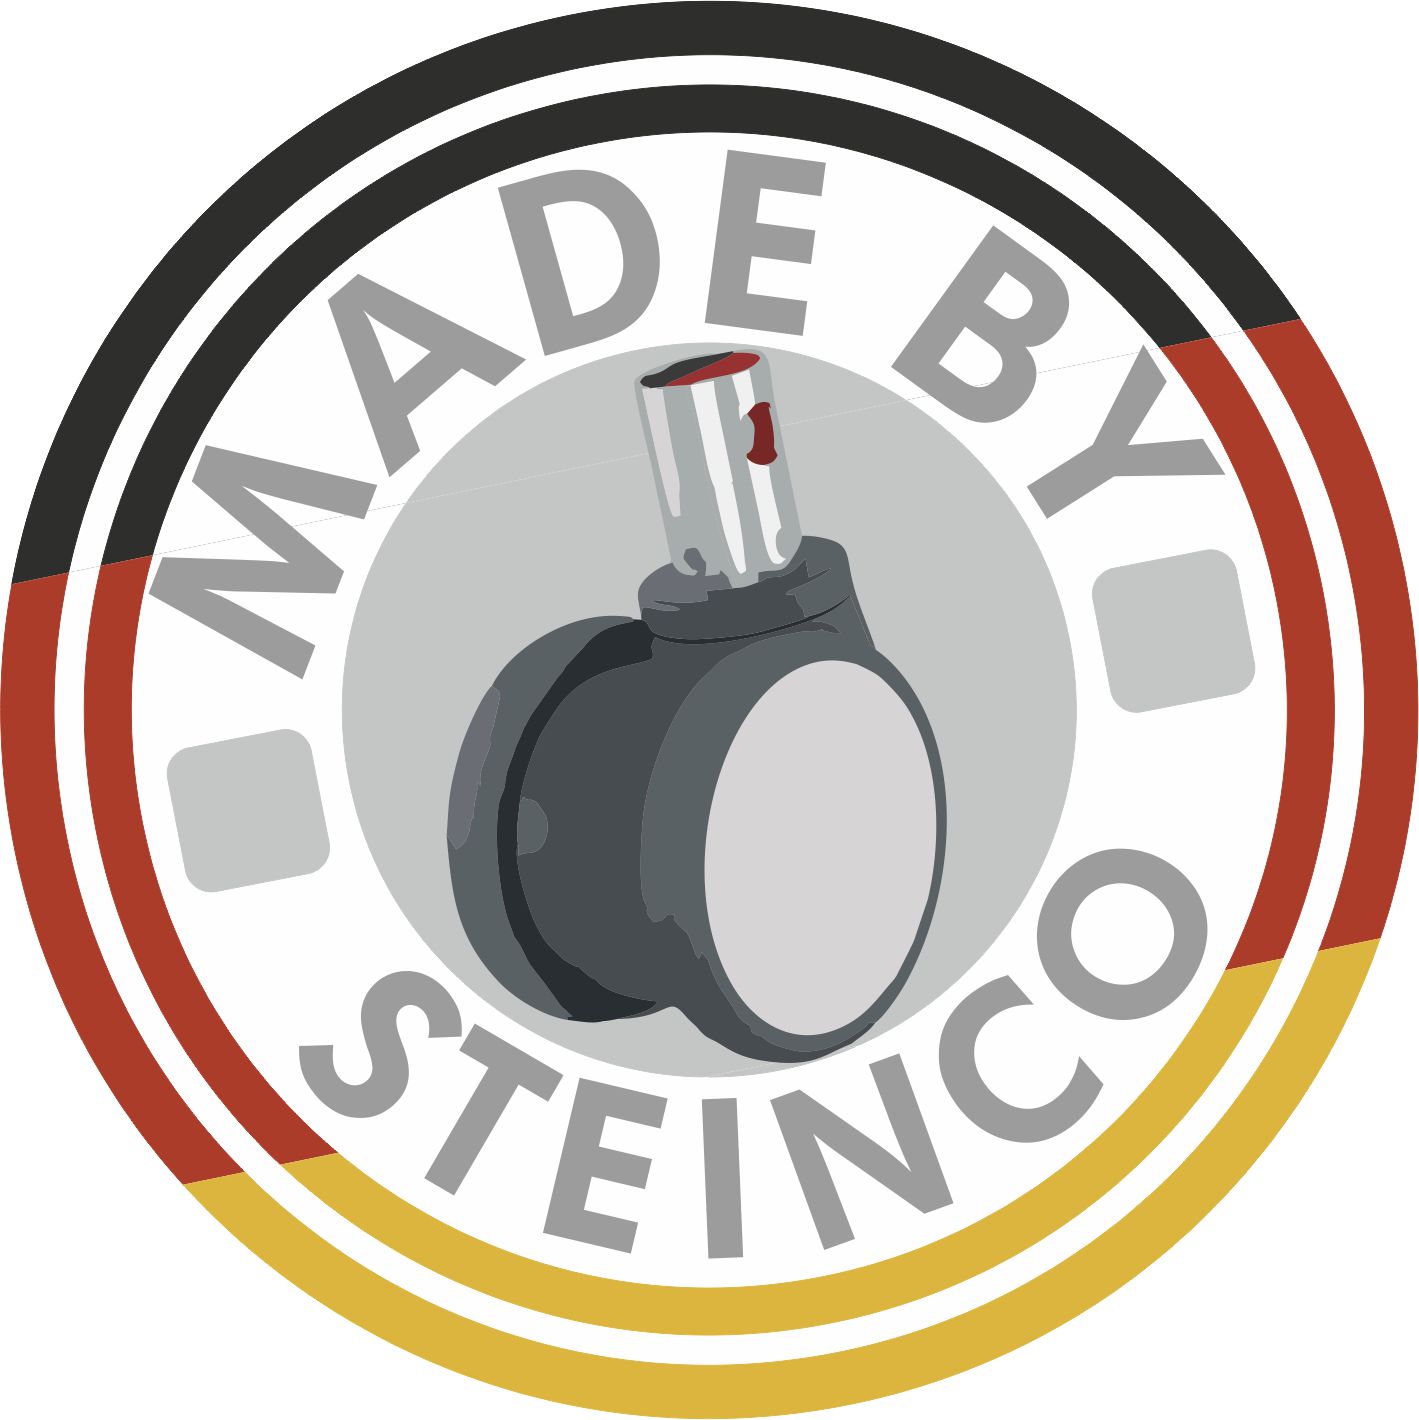 [Translate to Schwedisch:] Hersteller Rollen und Räder - Made by STEINCO and Made in Germany